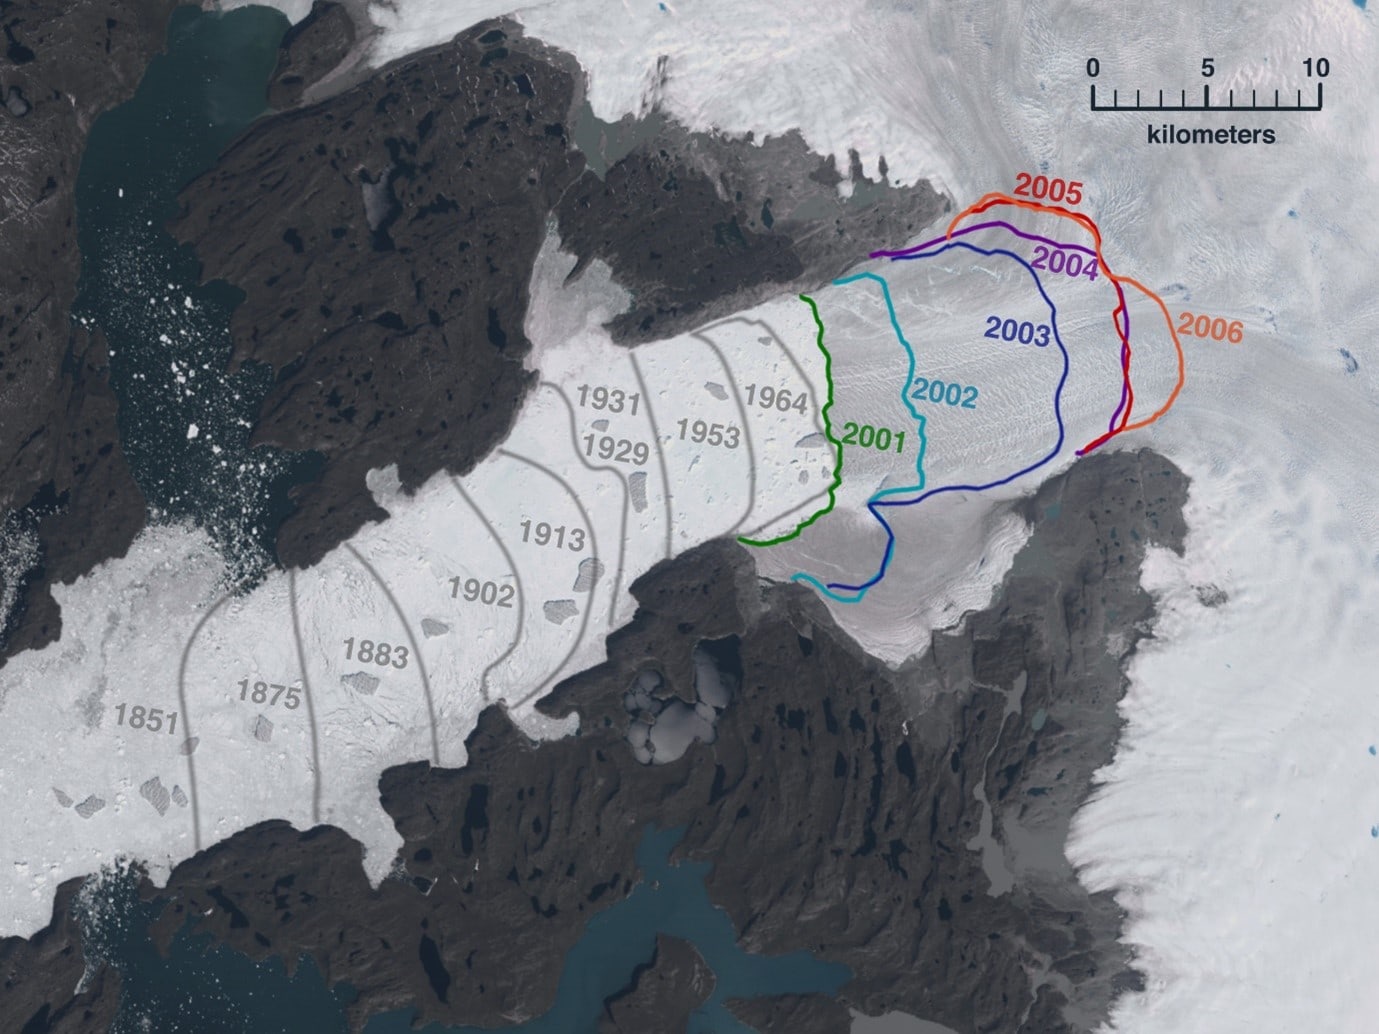 השינויים בחזית הקרחון בין השנים 1851-2006. נסיגה בחזית הקרחון כ-50 קמ